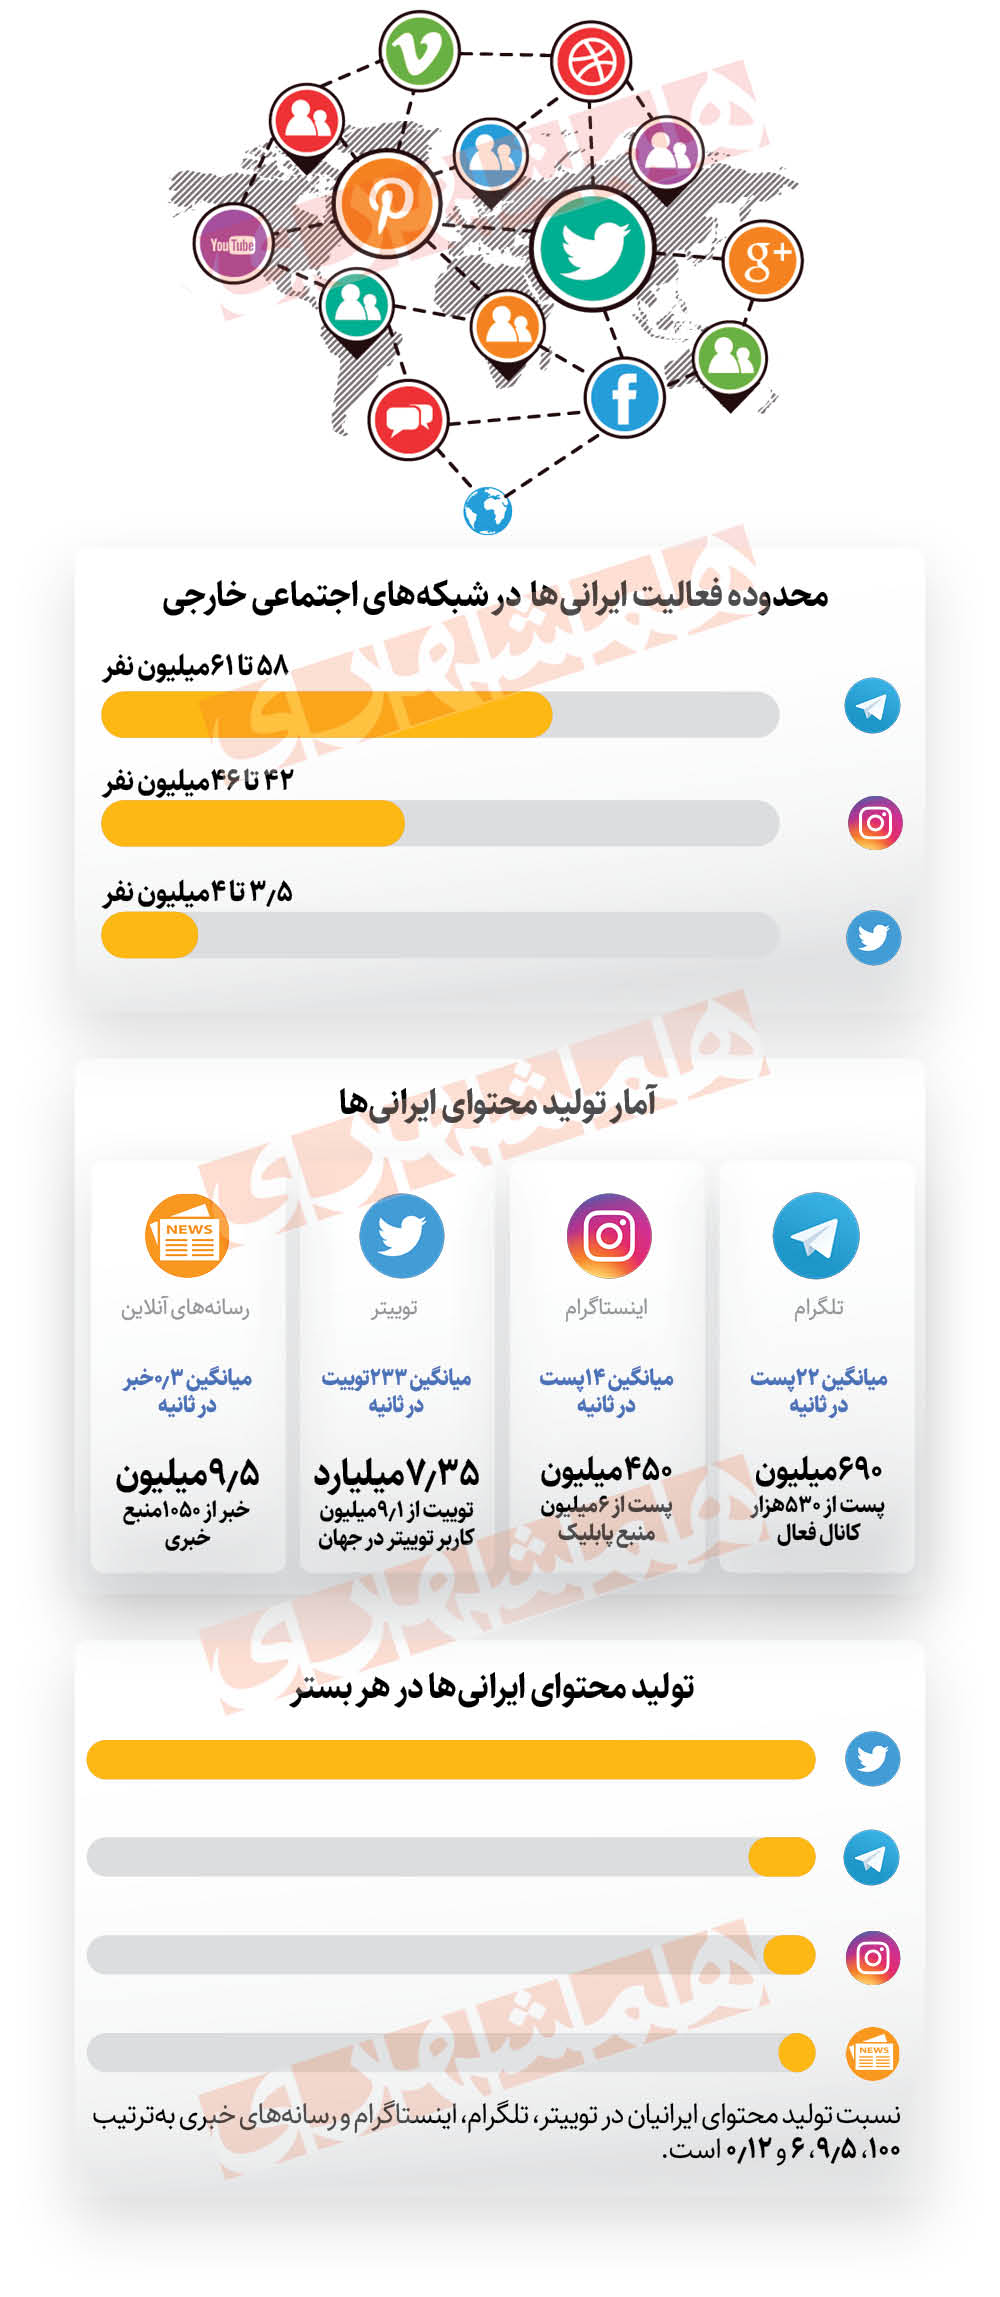 ایرانیان، در تلگرام رکورد زدند